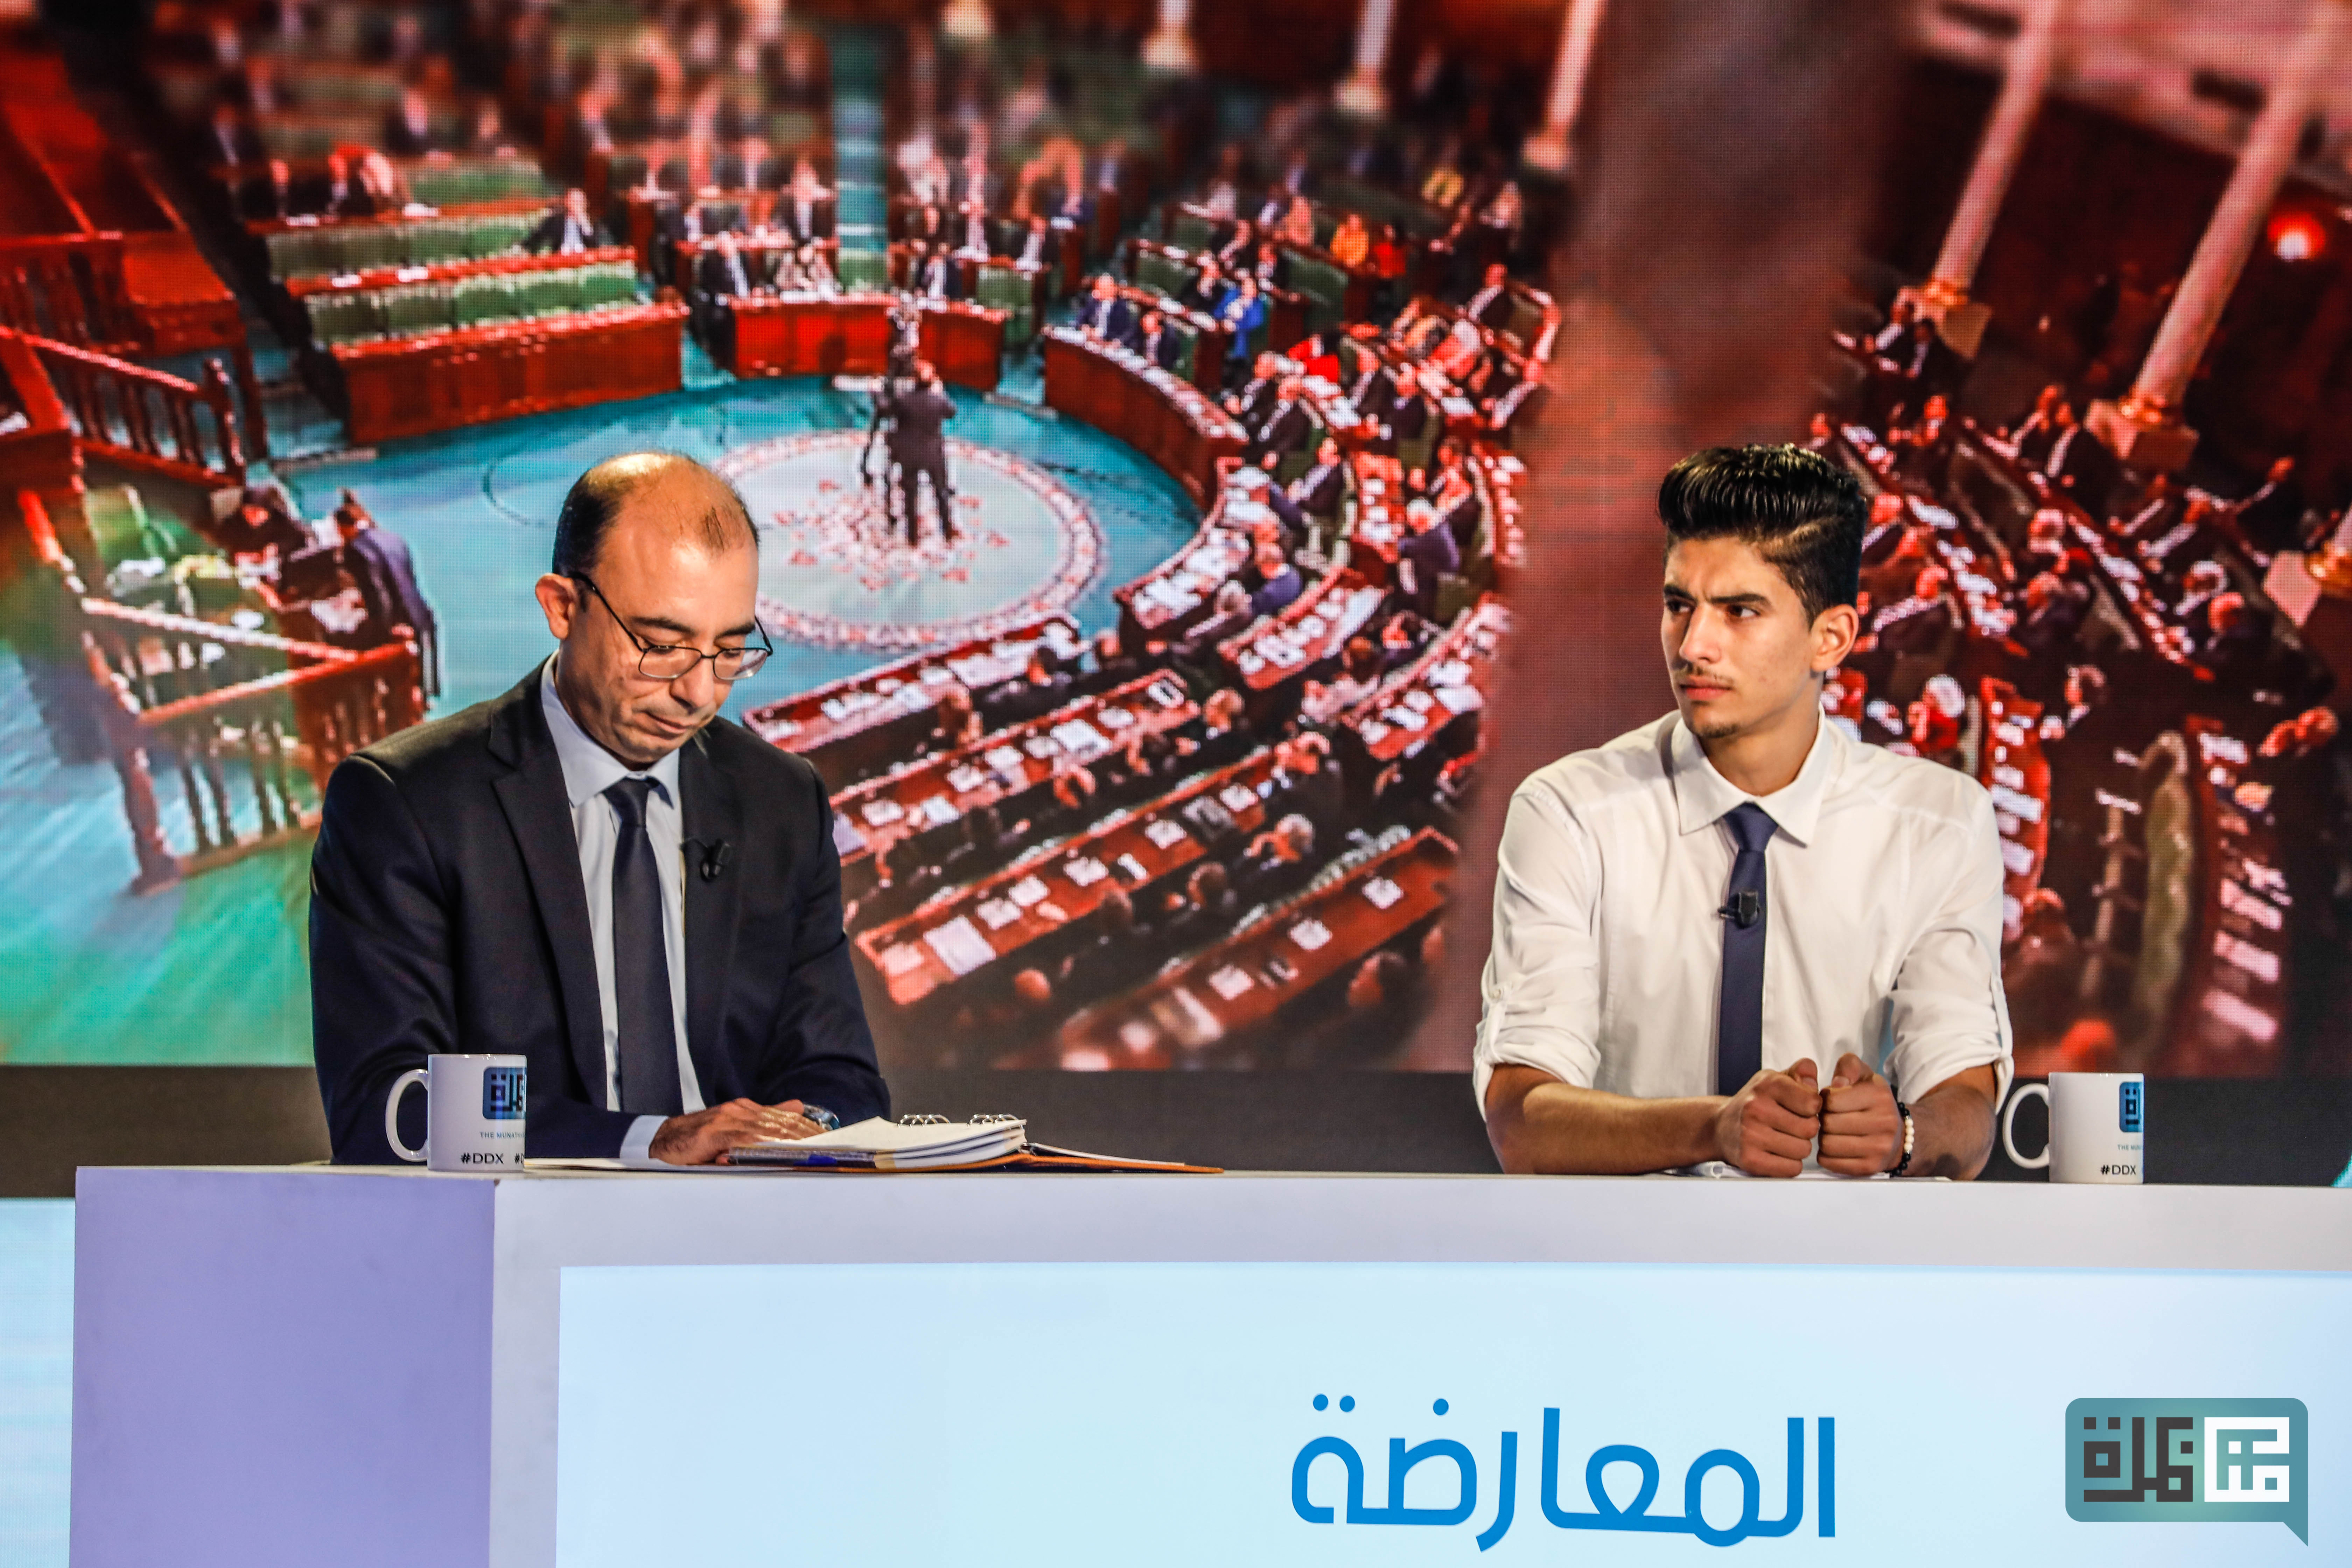 Debate Tunisia Youth